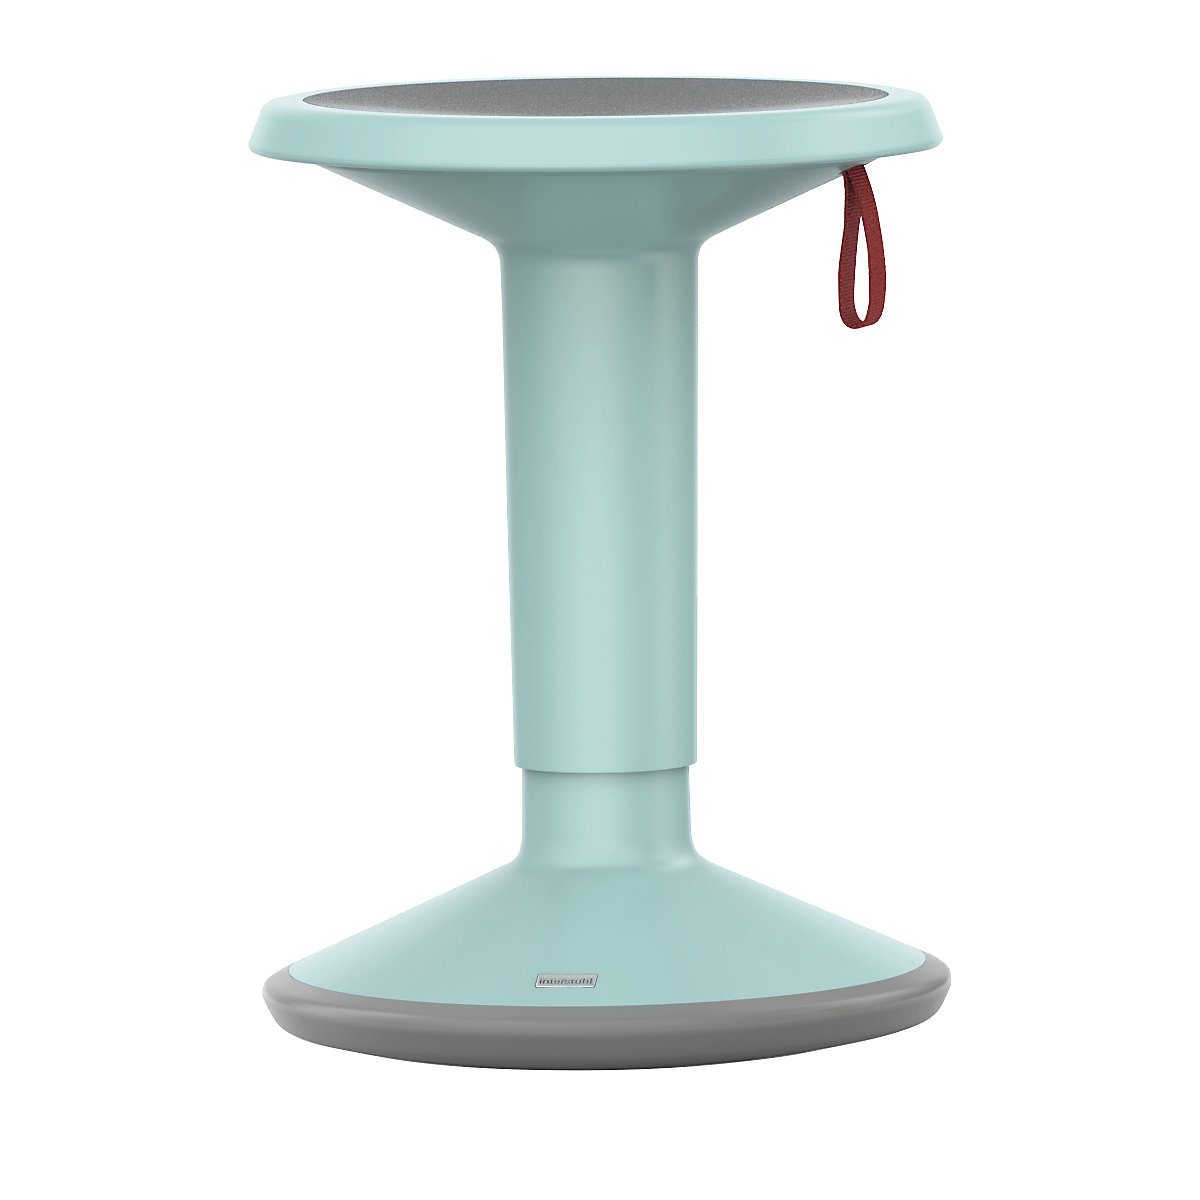 Tabouret polyvalent UP – interstuhl, hauteur réglable 450 – 630 mm, turquoise pastel